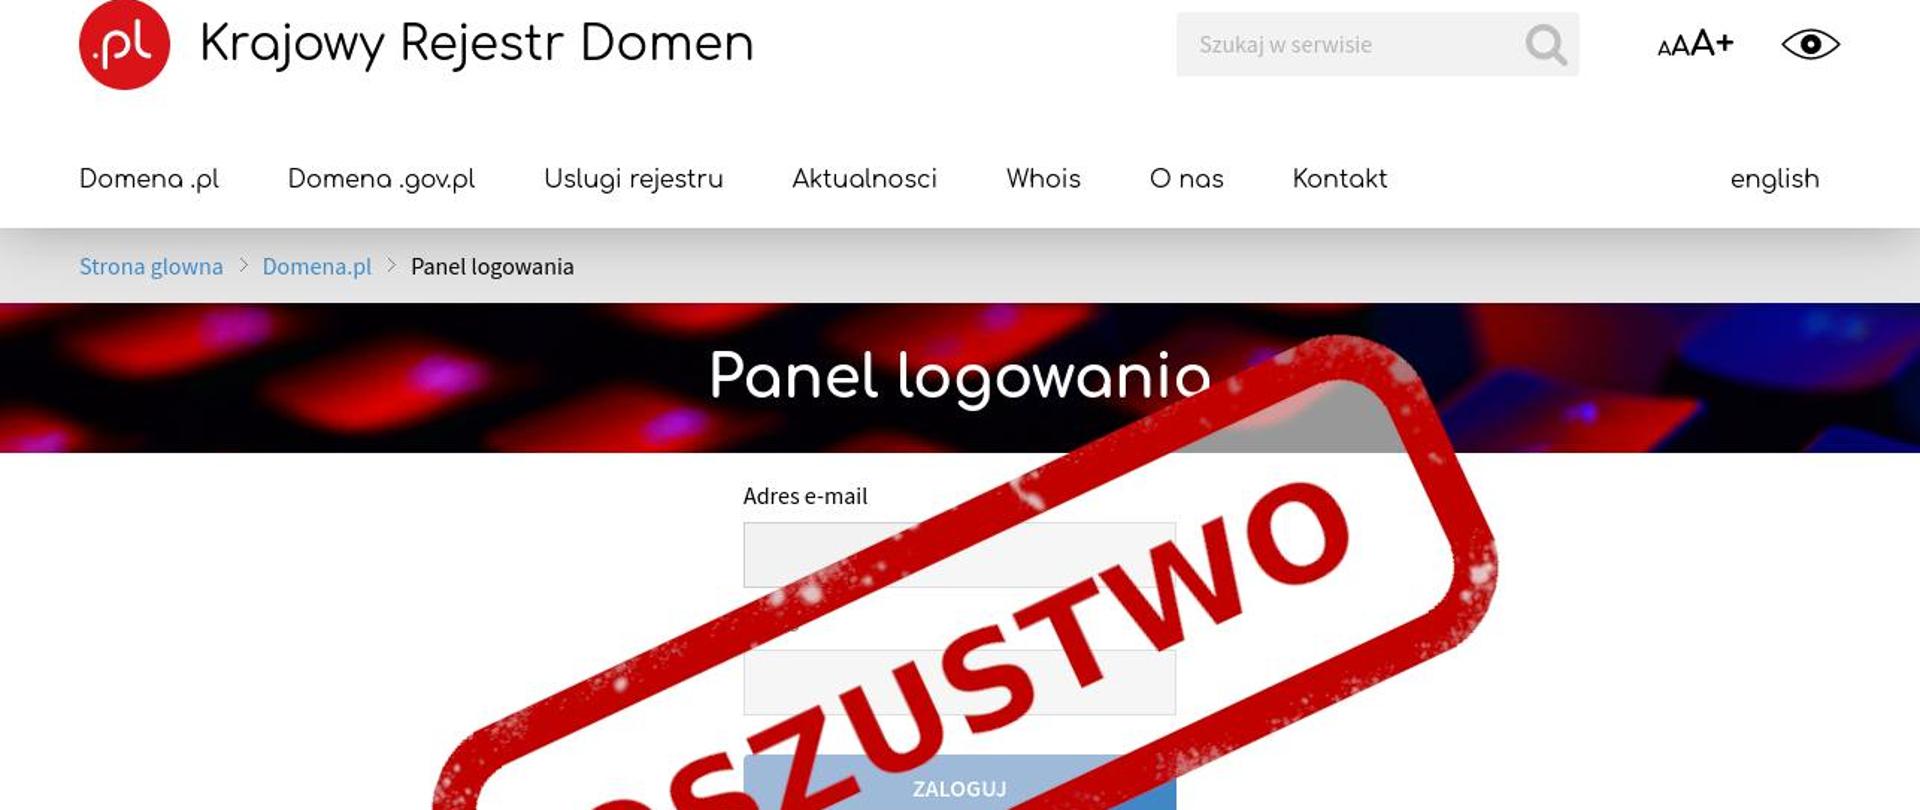 Zdjęcie fałszywej strony internetowej podszywającej się pod Krajowy Rejestr Domen , na środku czerwony napis oszustwo